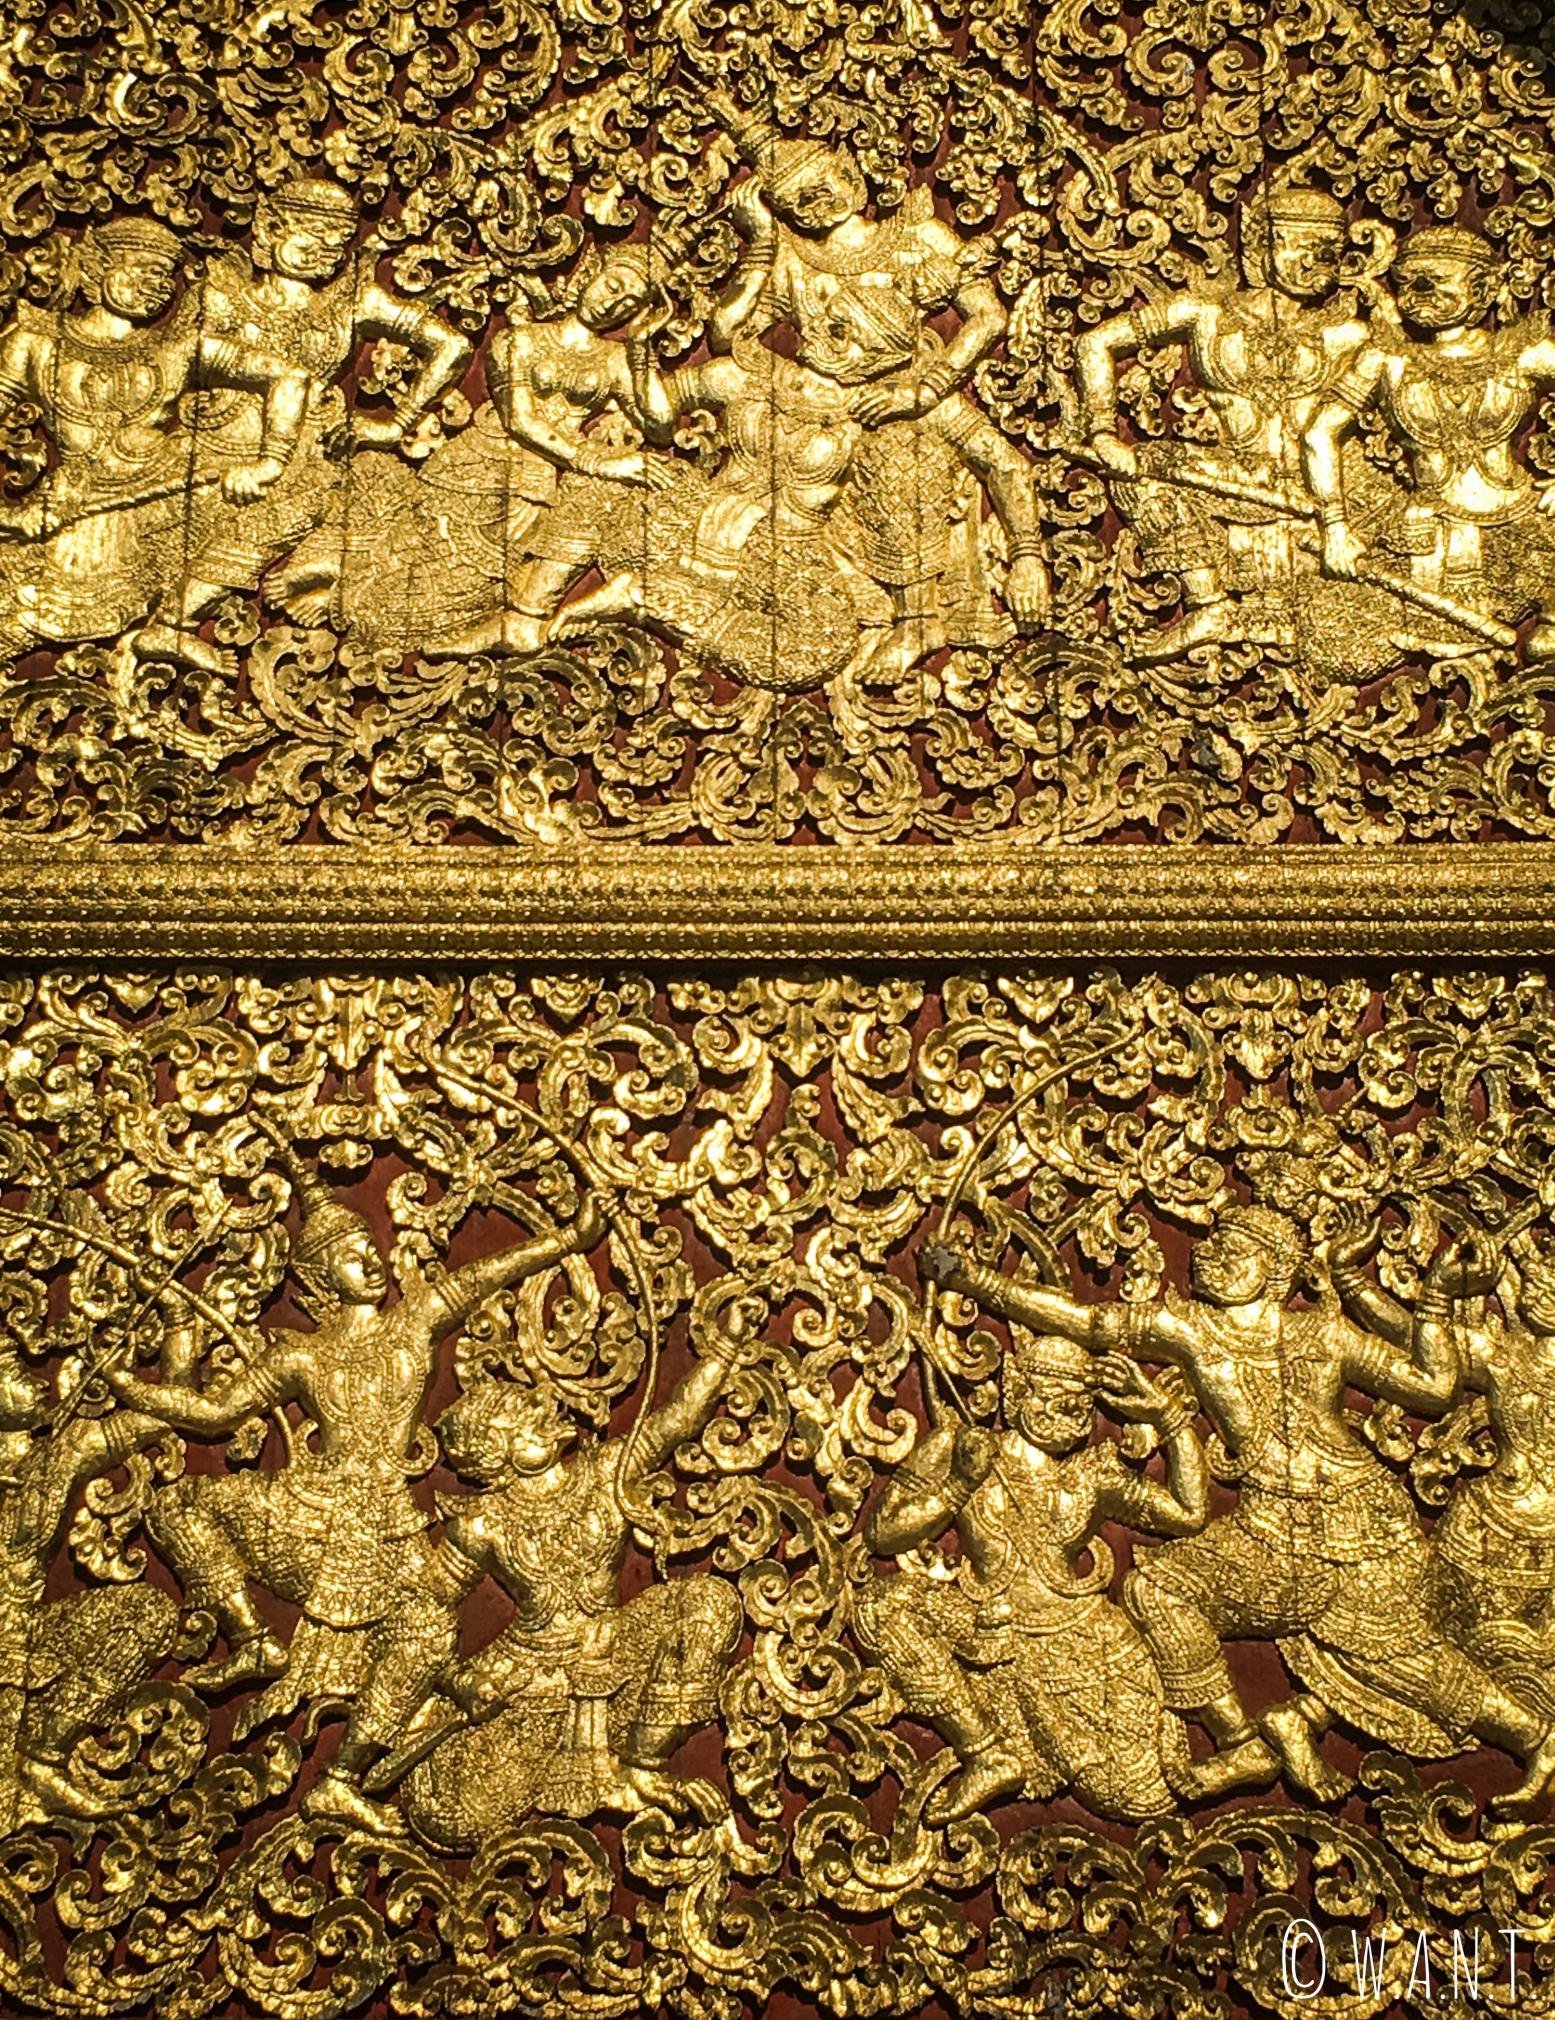 Ornements du Vat Xieng Thong de Luang Prabang